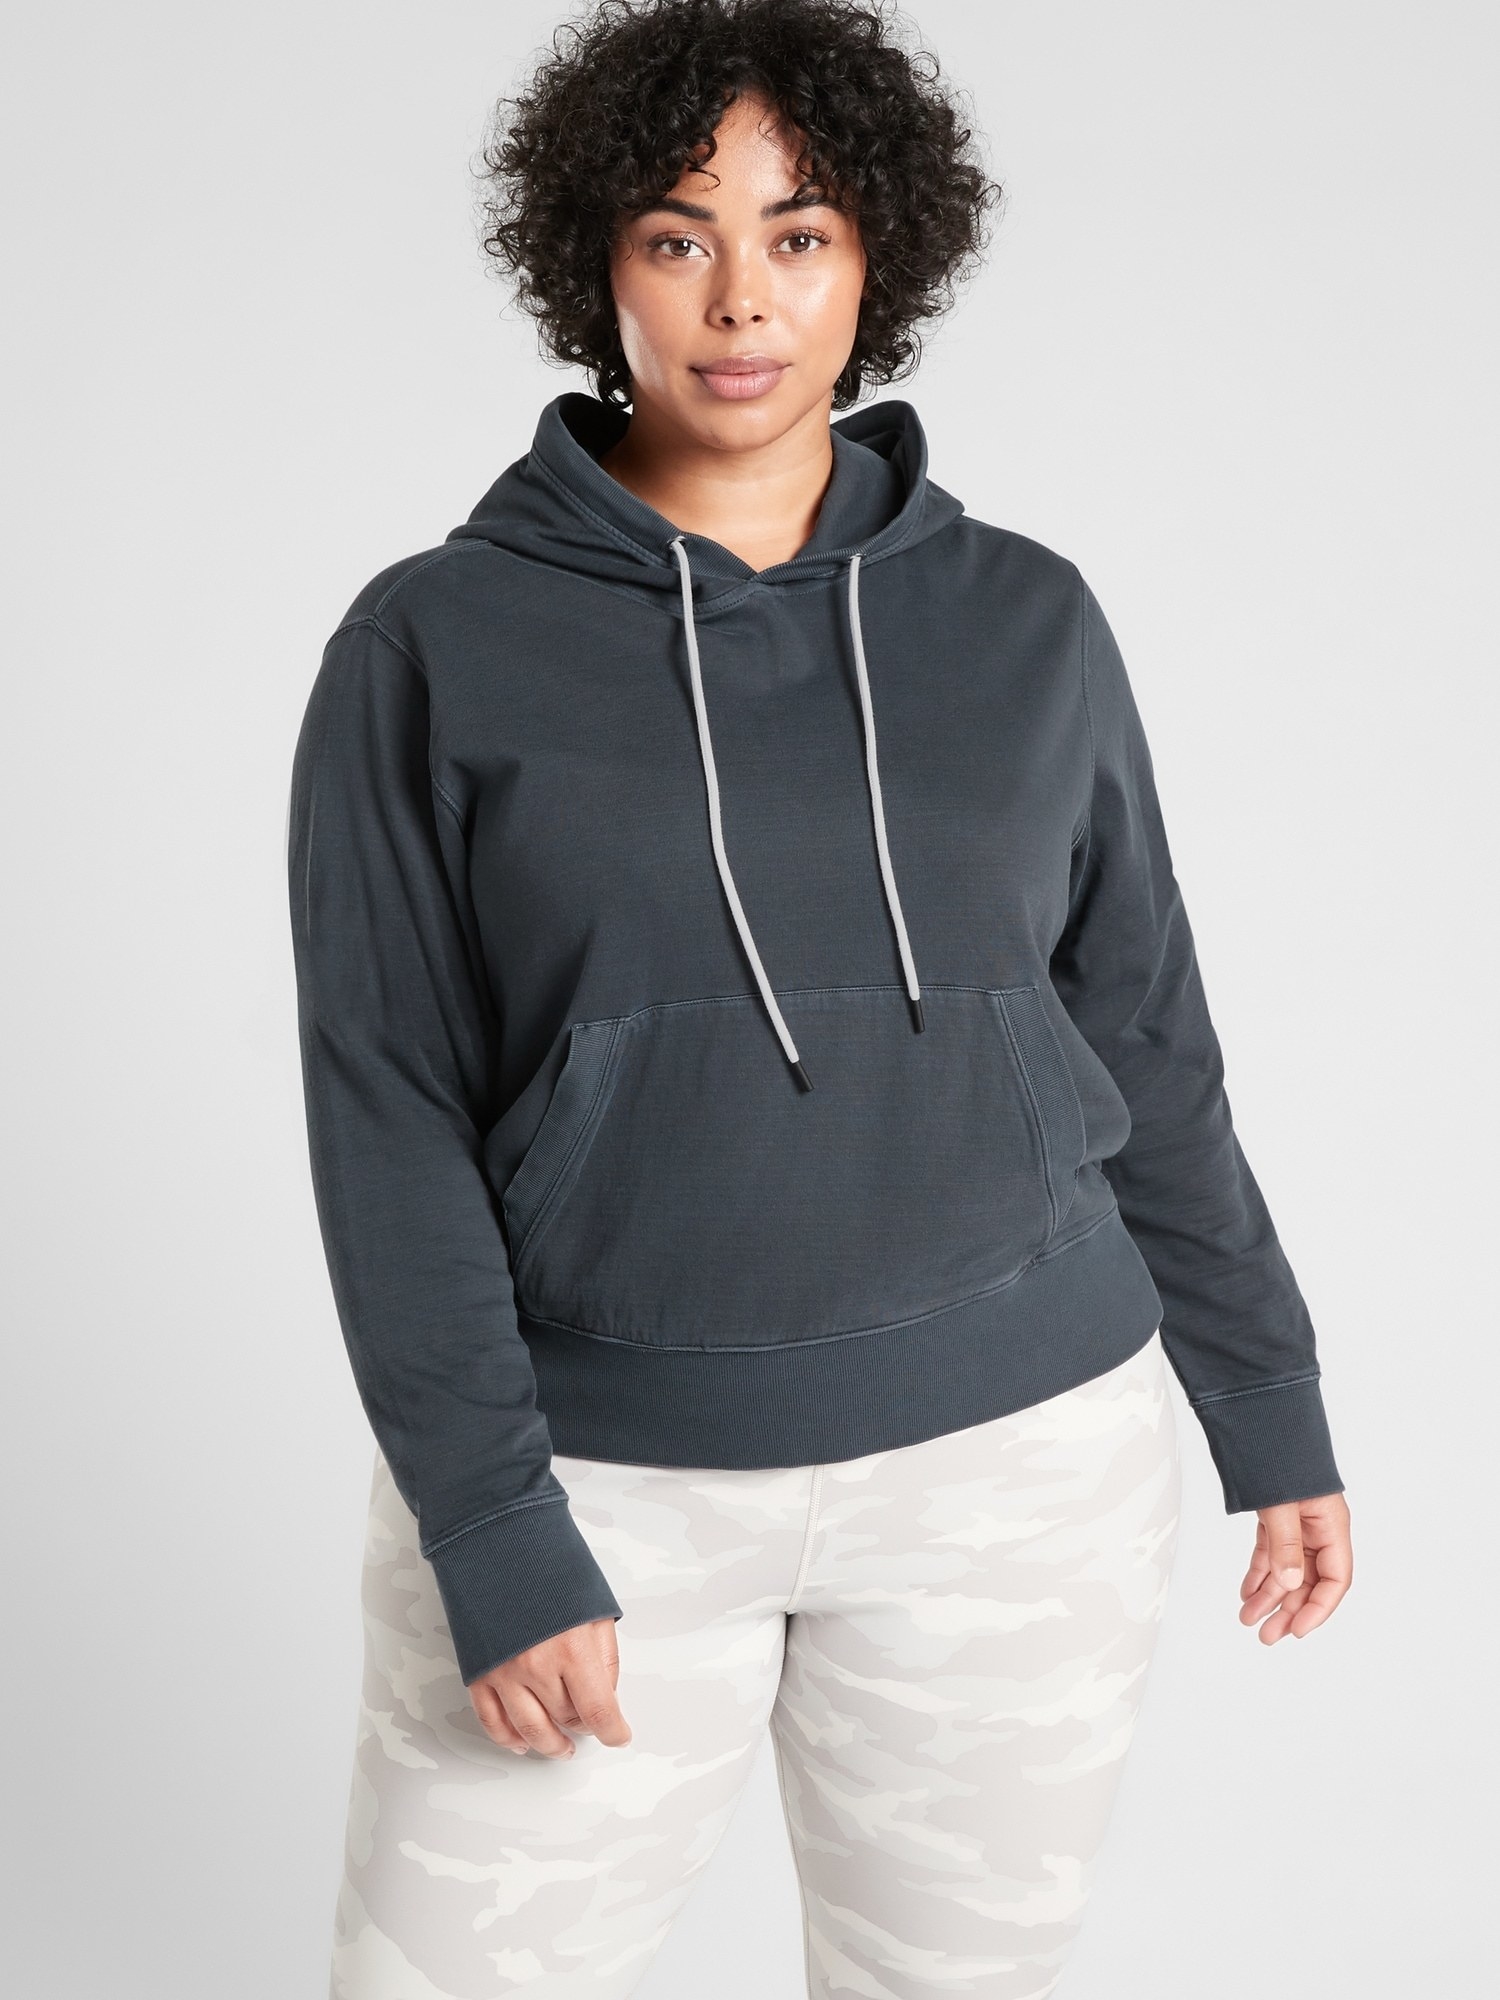 A model wearing the black hoodie